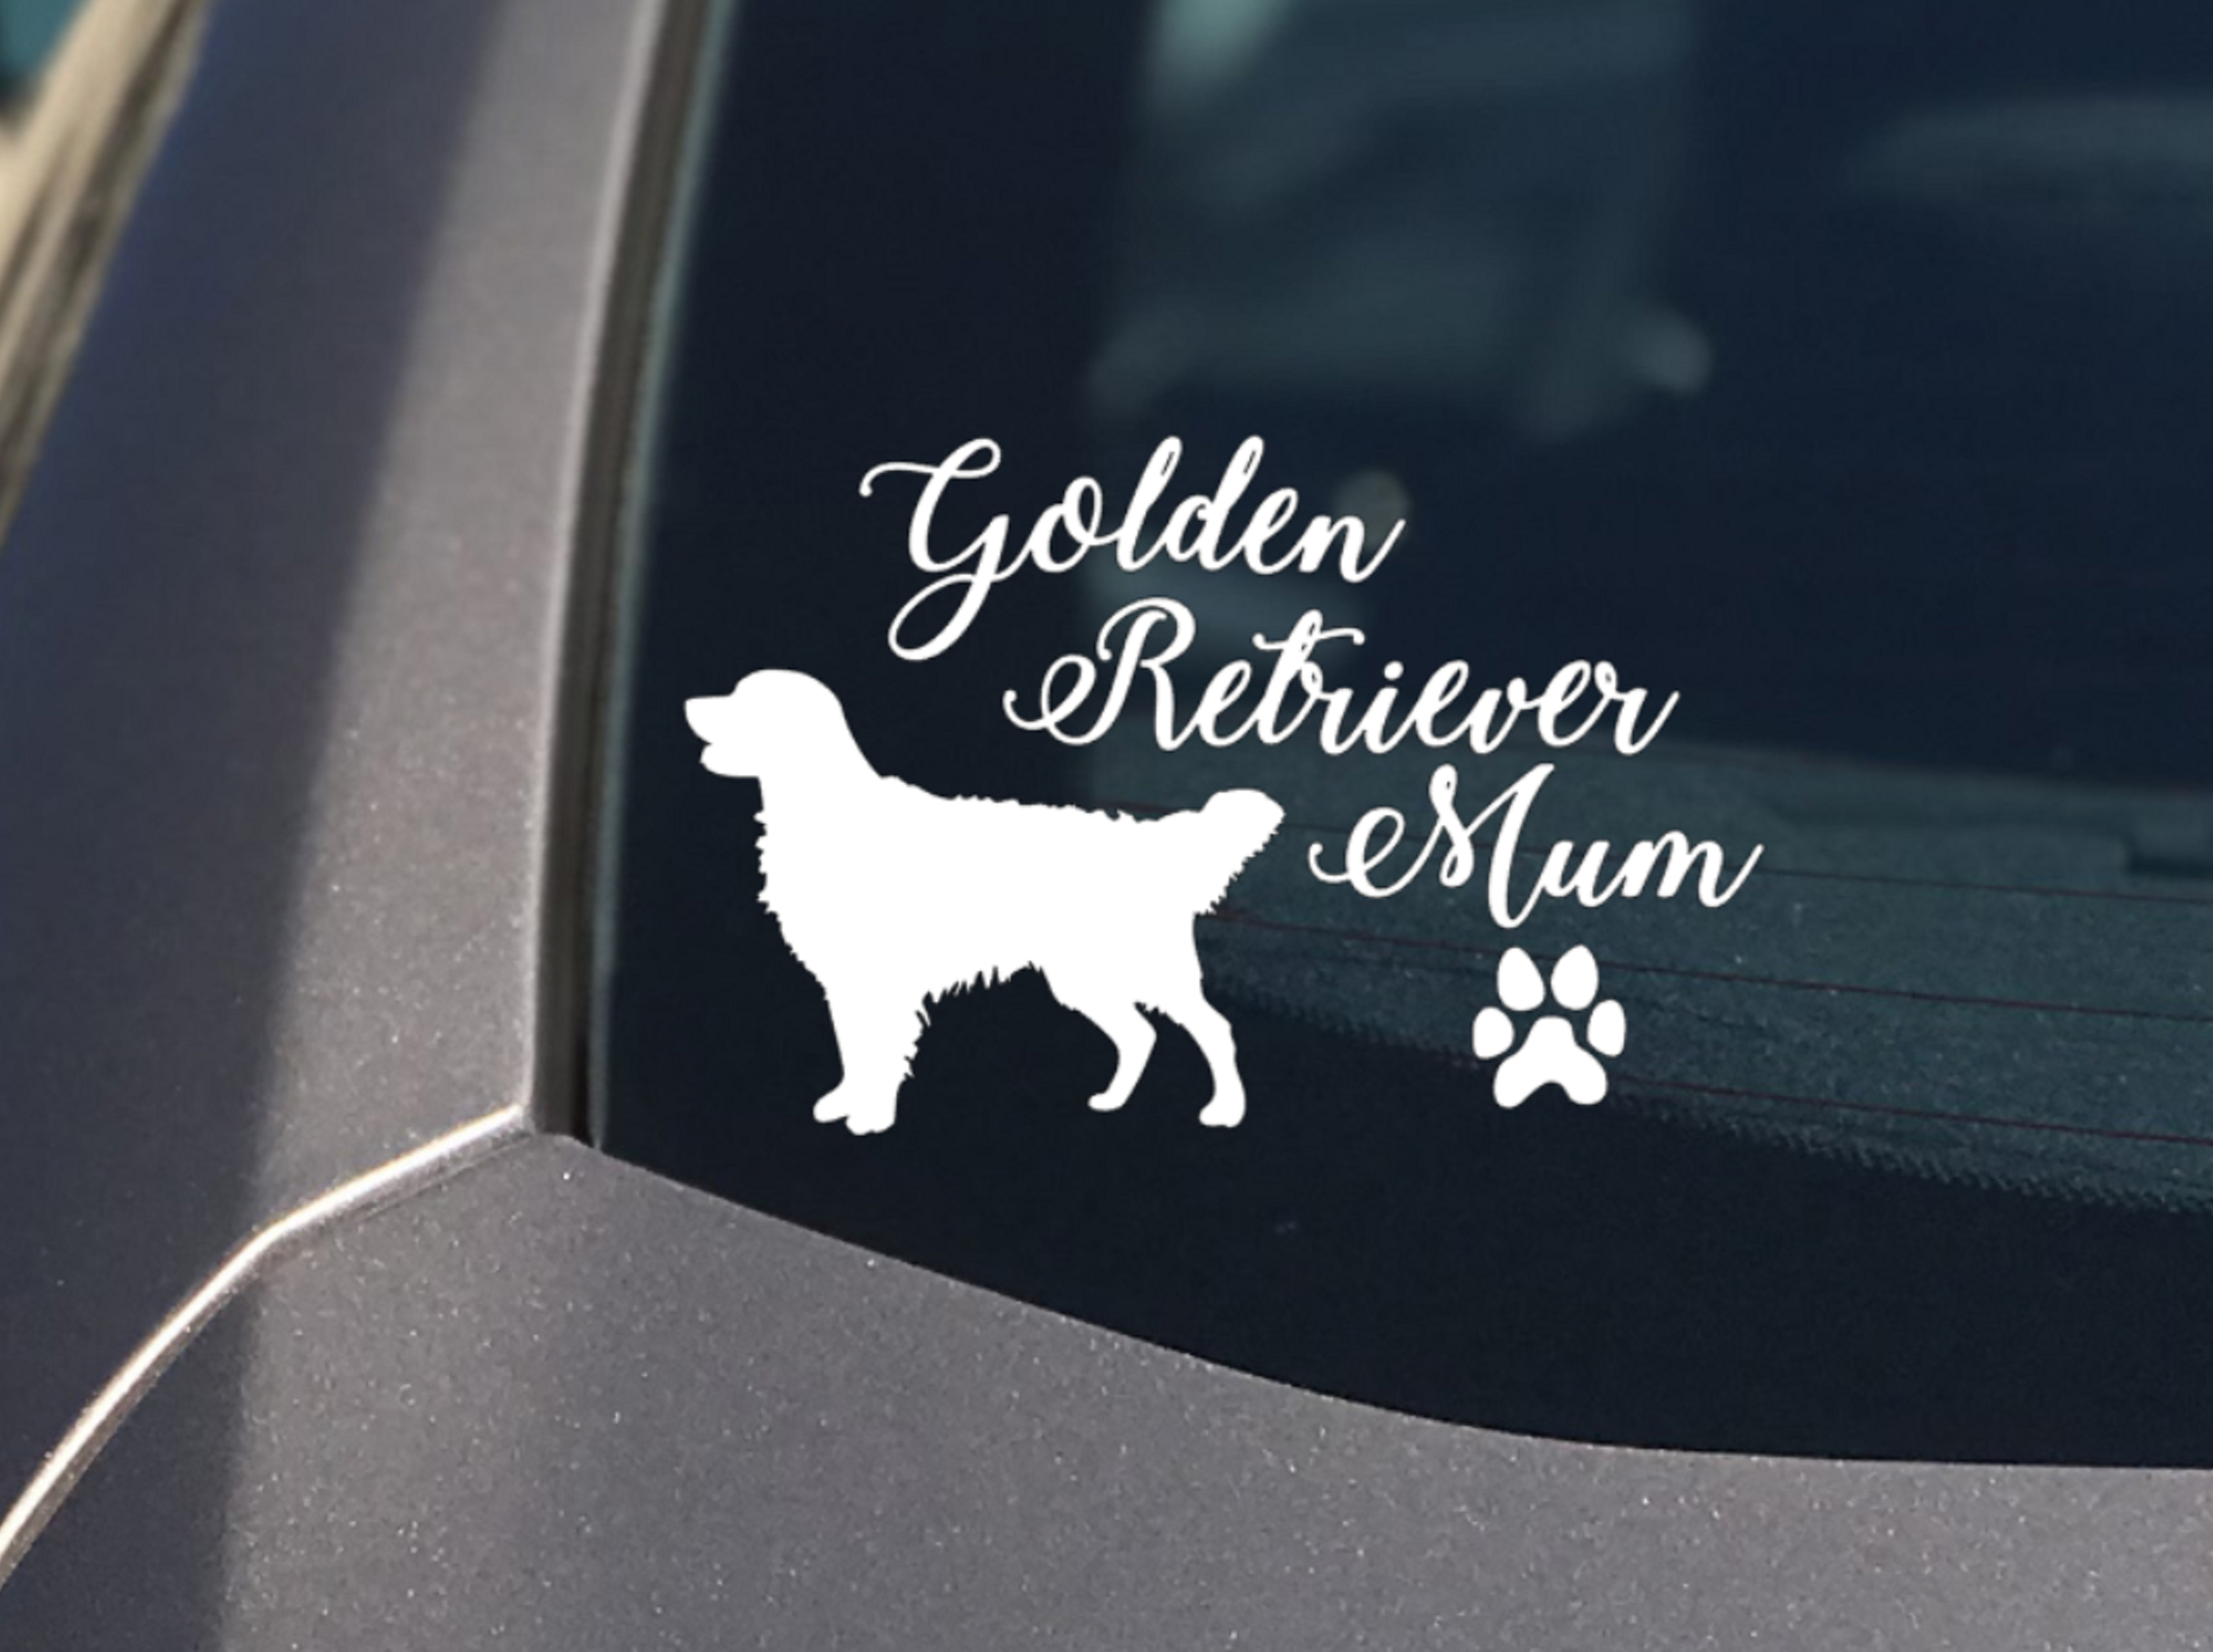 Golden Retriever Mum Sticker Car Decal